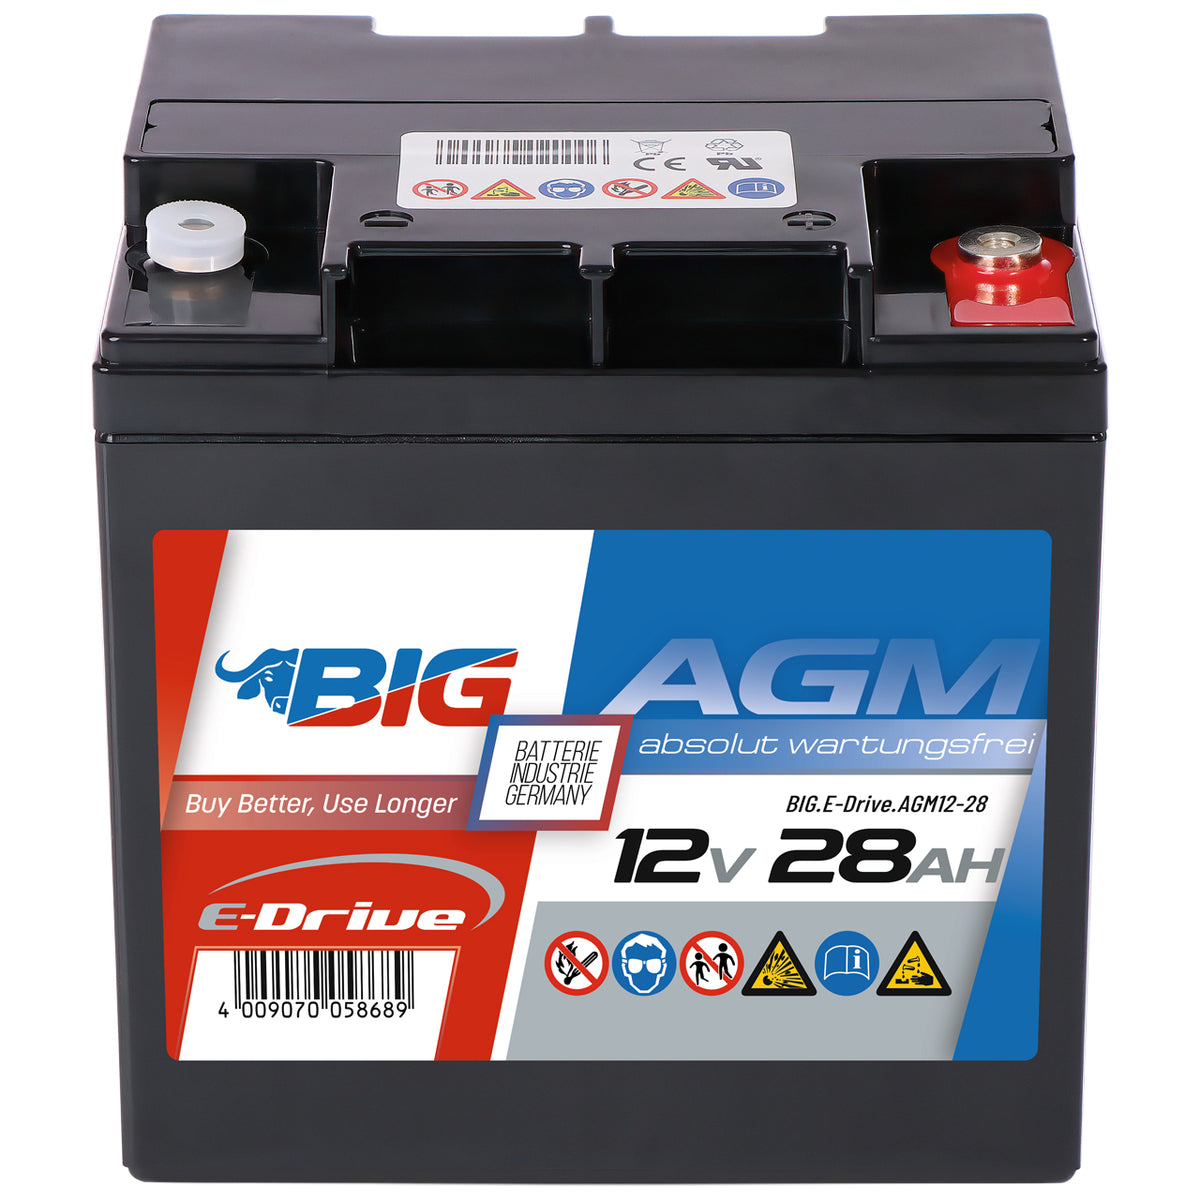 BIG E-Drive AGM 12V 28Ah